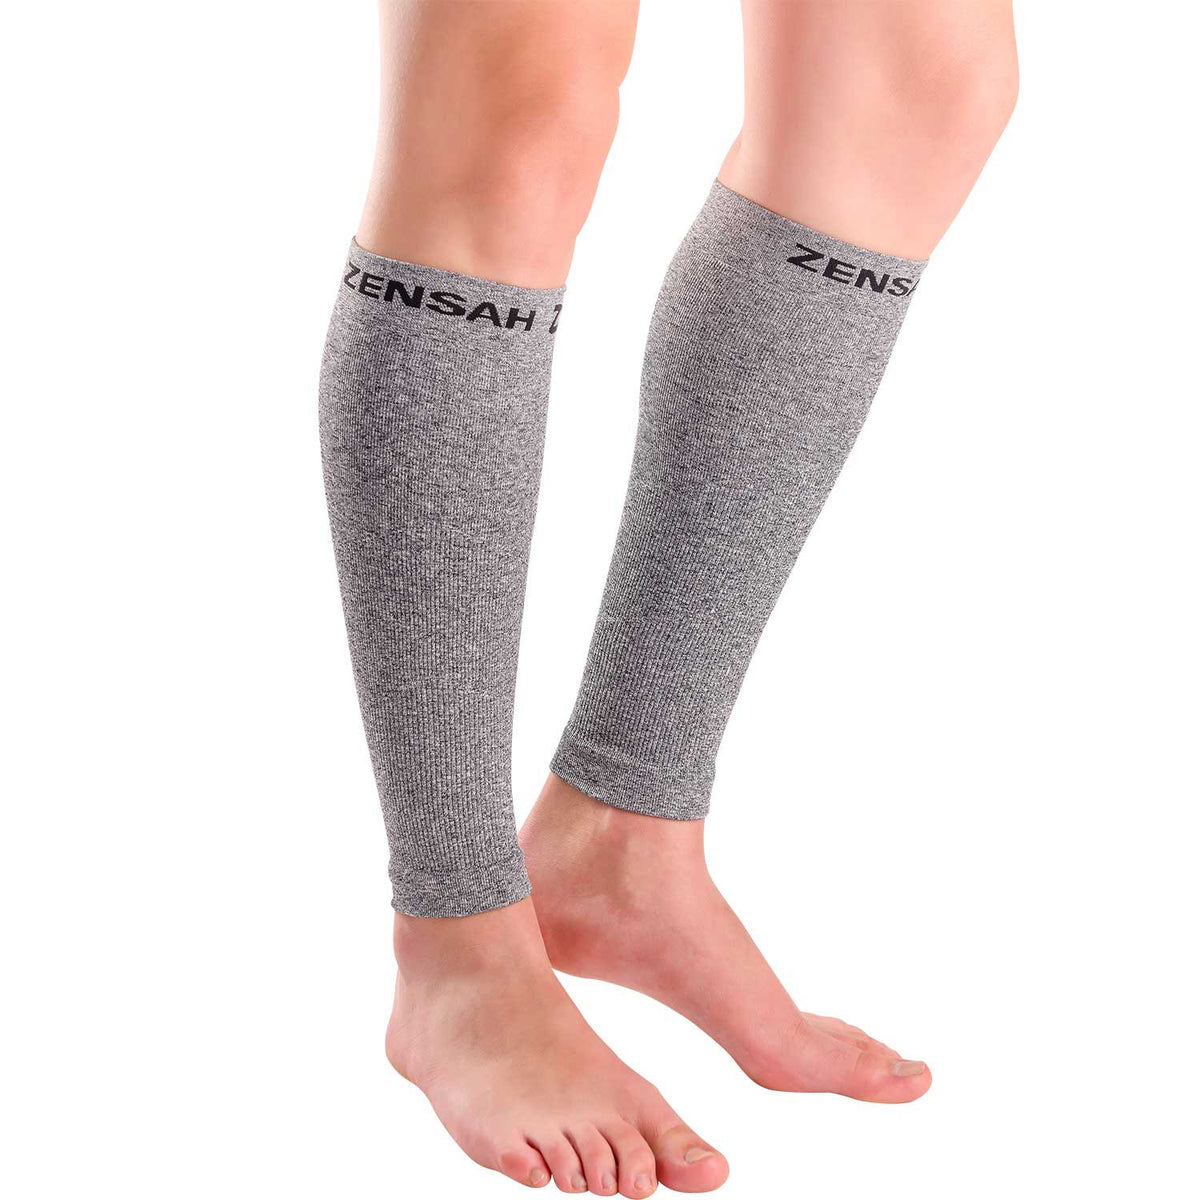 footless compression socks for men